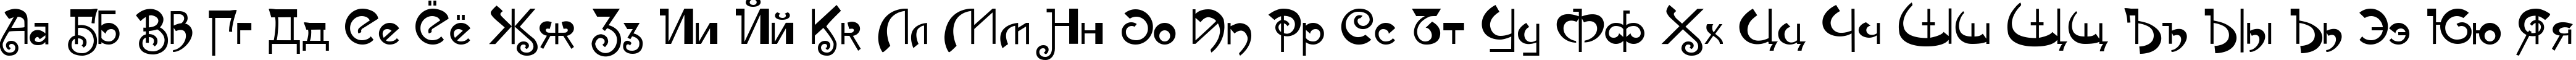 Пример написания русского алфавита шрифтом Muse